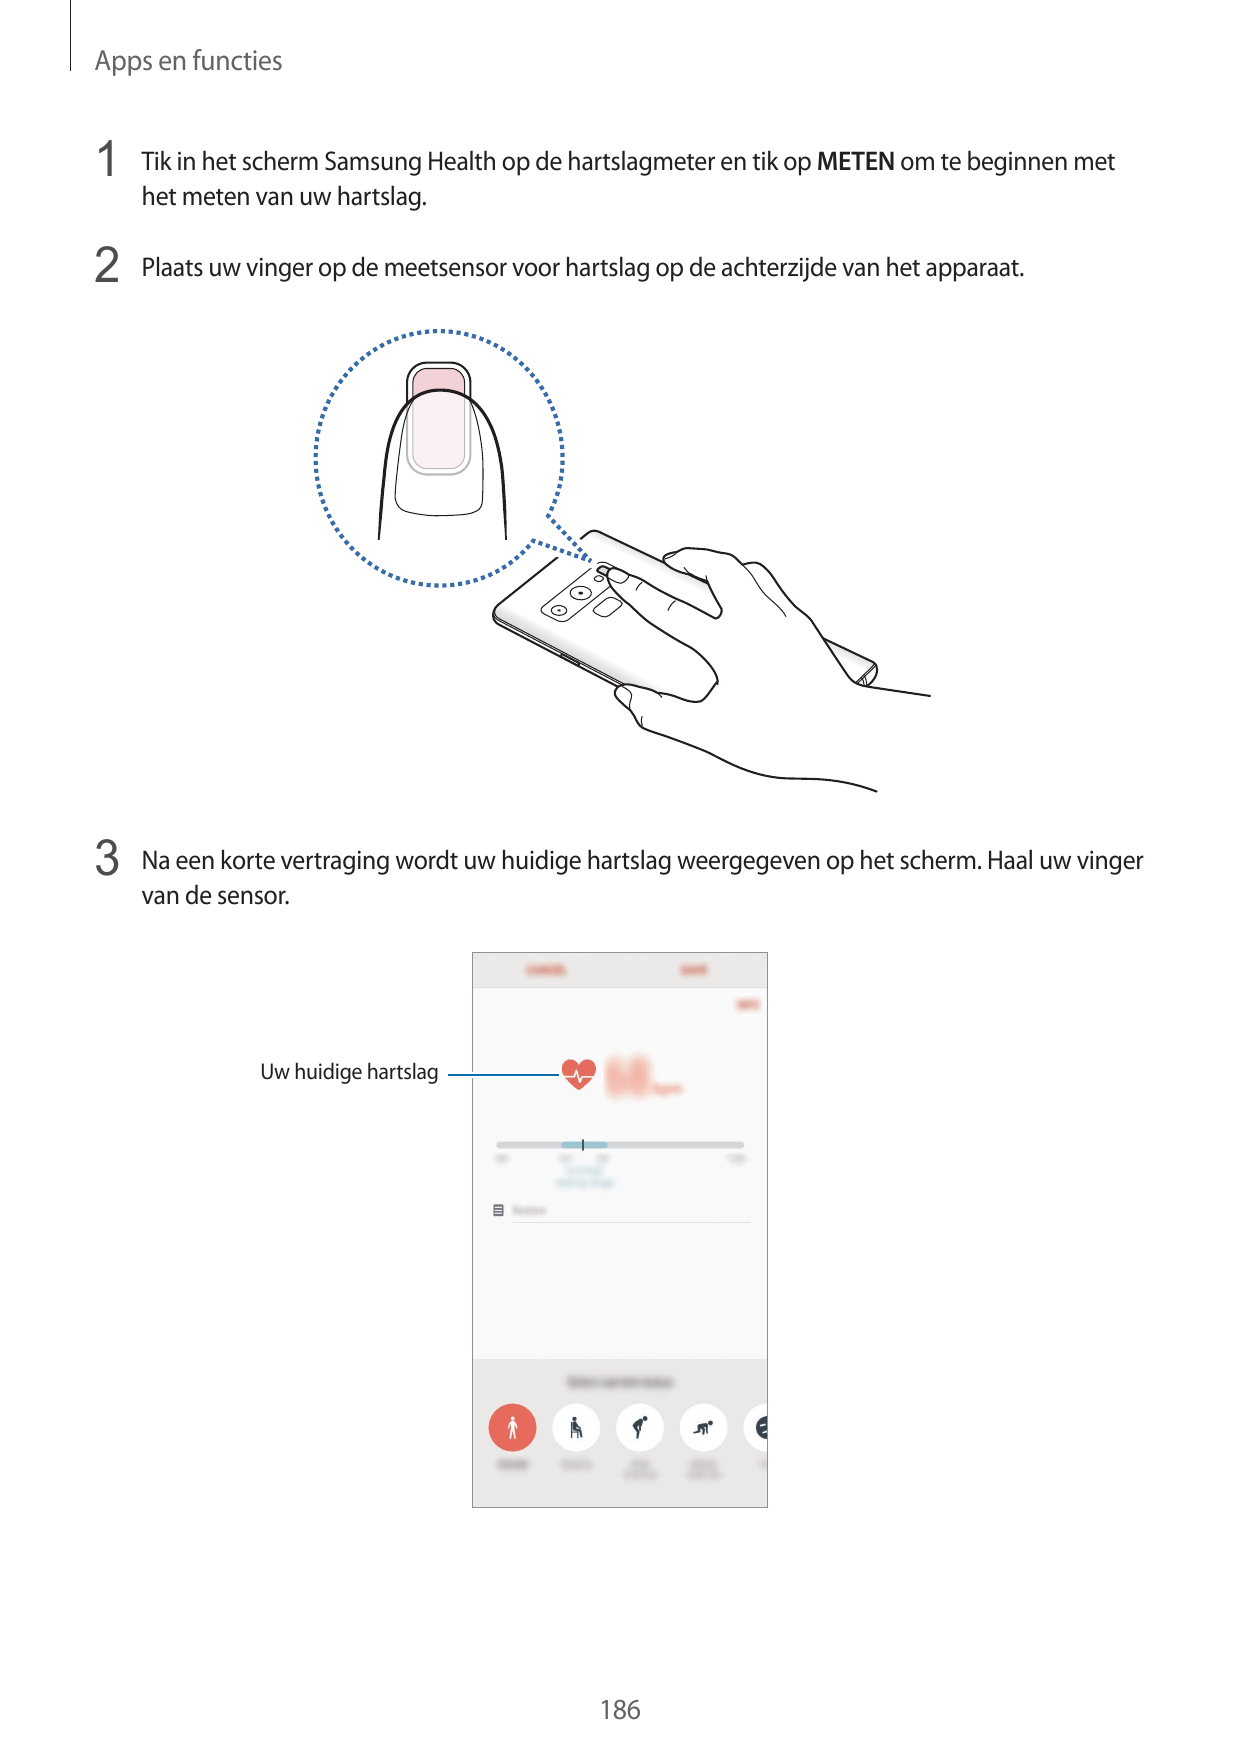 Apps en functies1 Tik in het scherm Samsung Health op de hartslagmeter en tik op METEN om te beginnen methet meten van uw hartsl